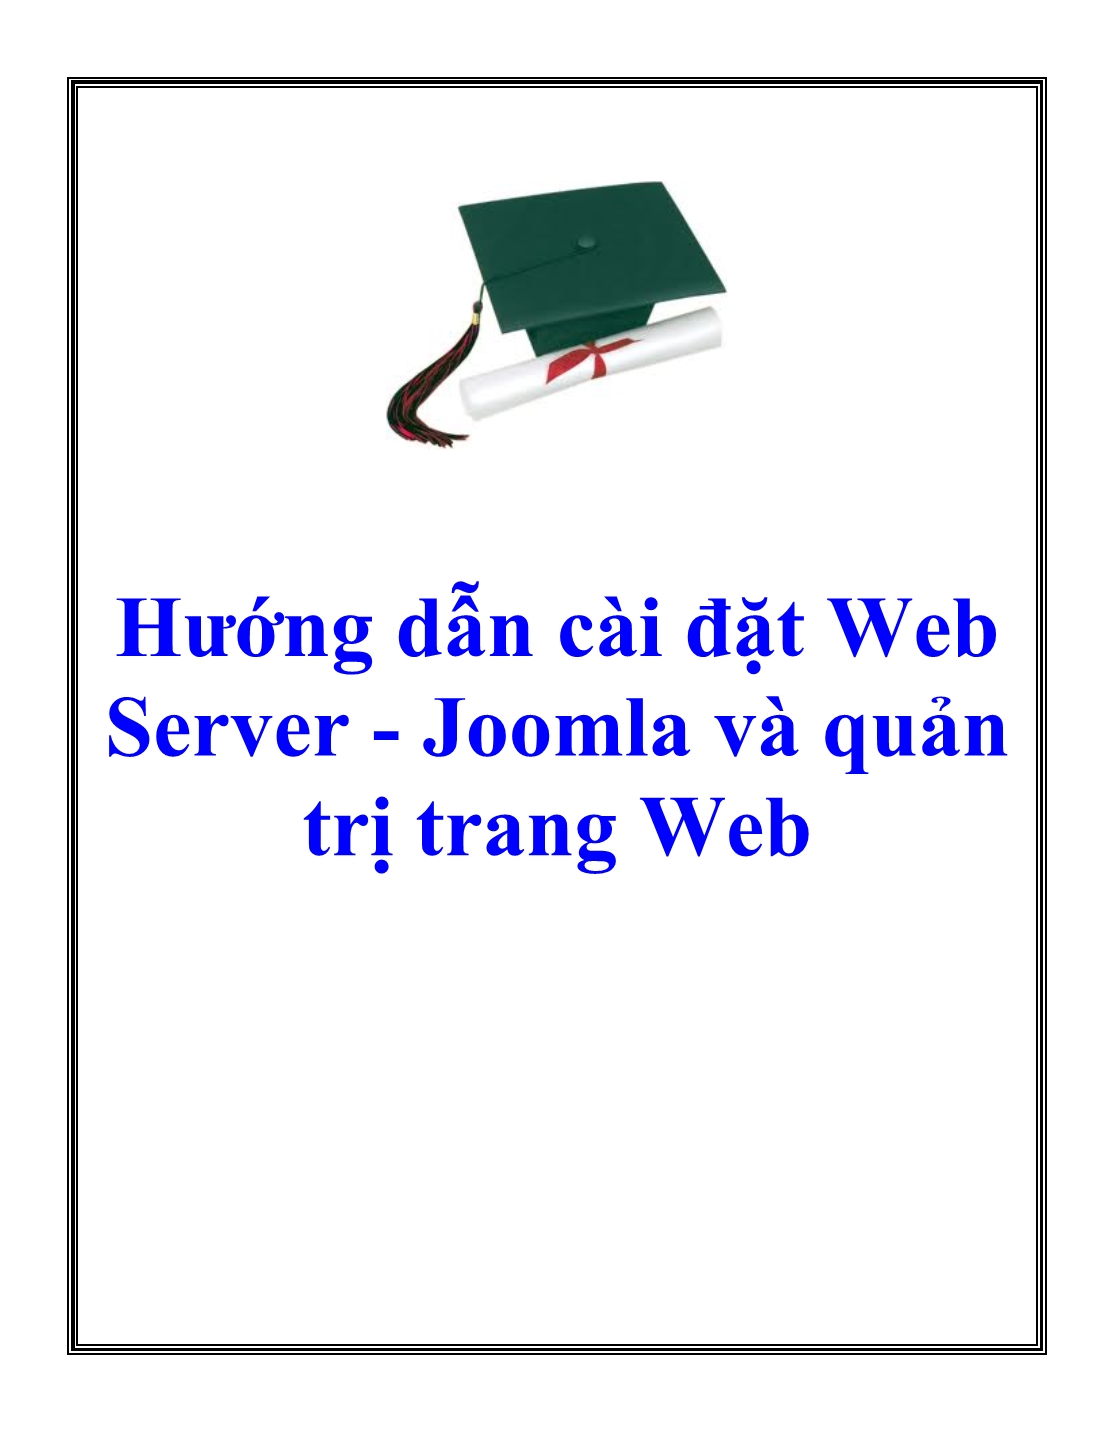 Hướng dẫn cài đặt Web Server - Joomla và quản trị trang Web trang 1